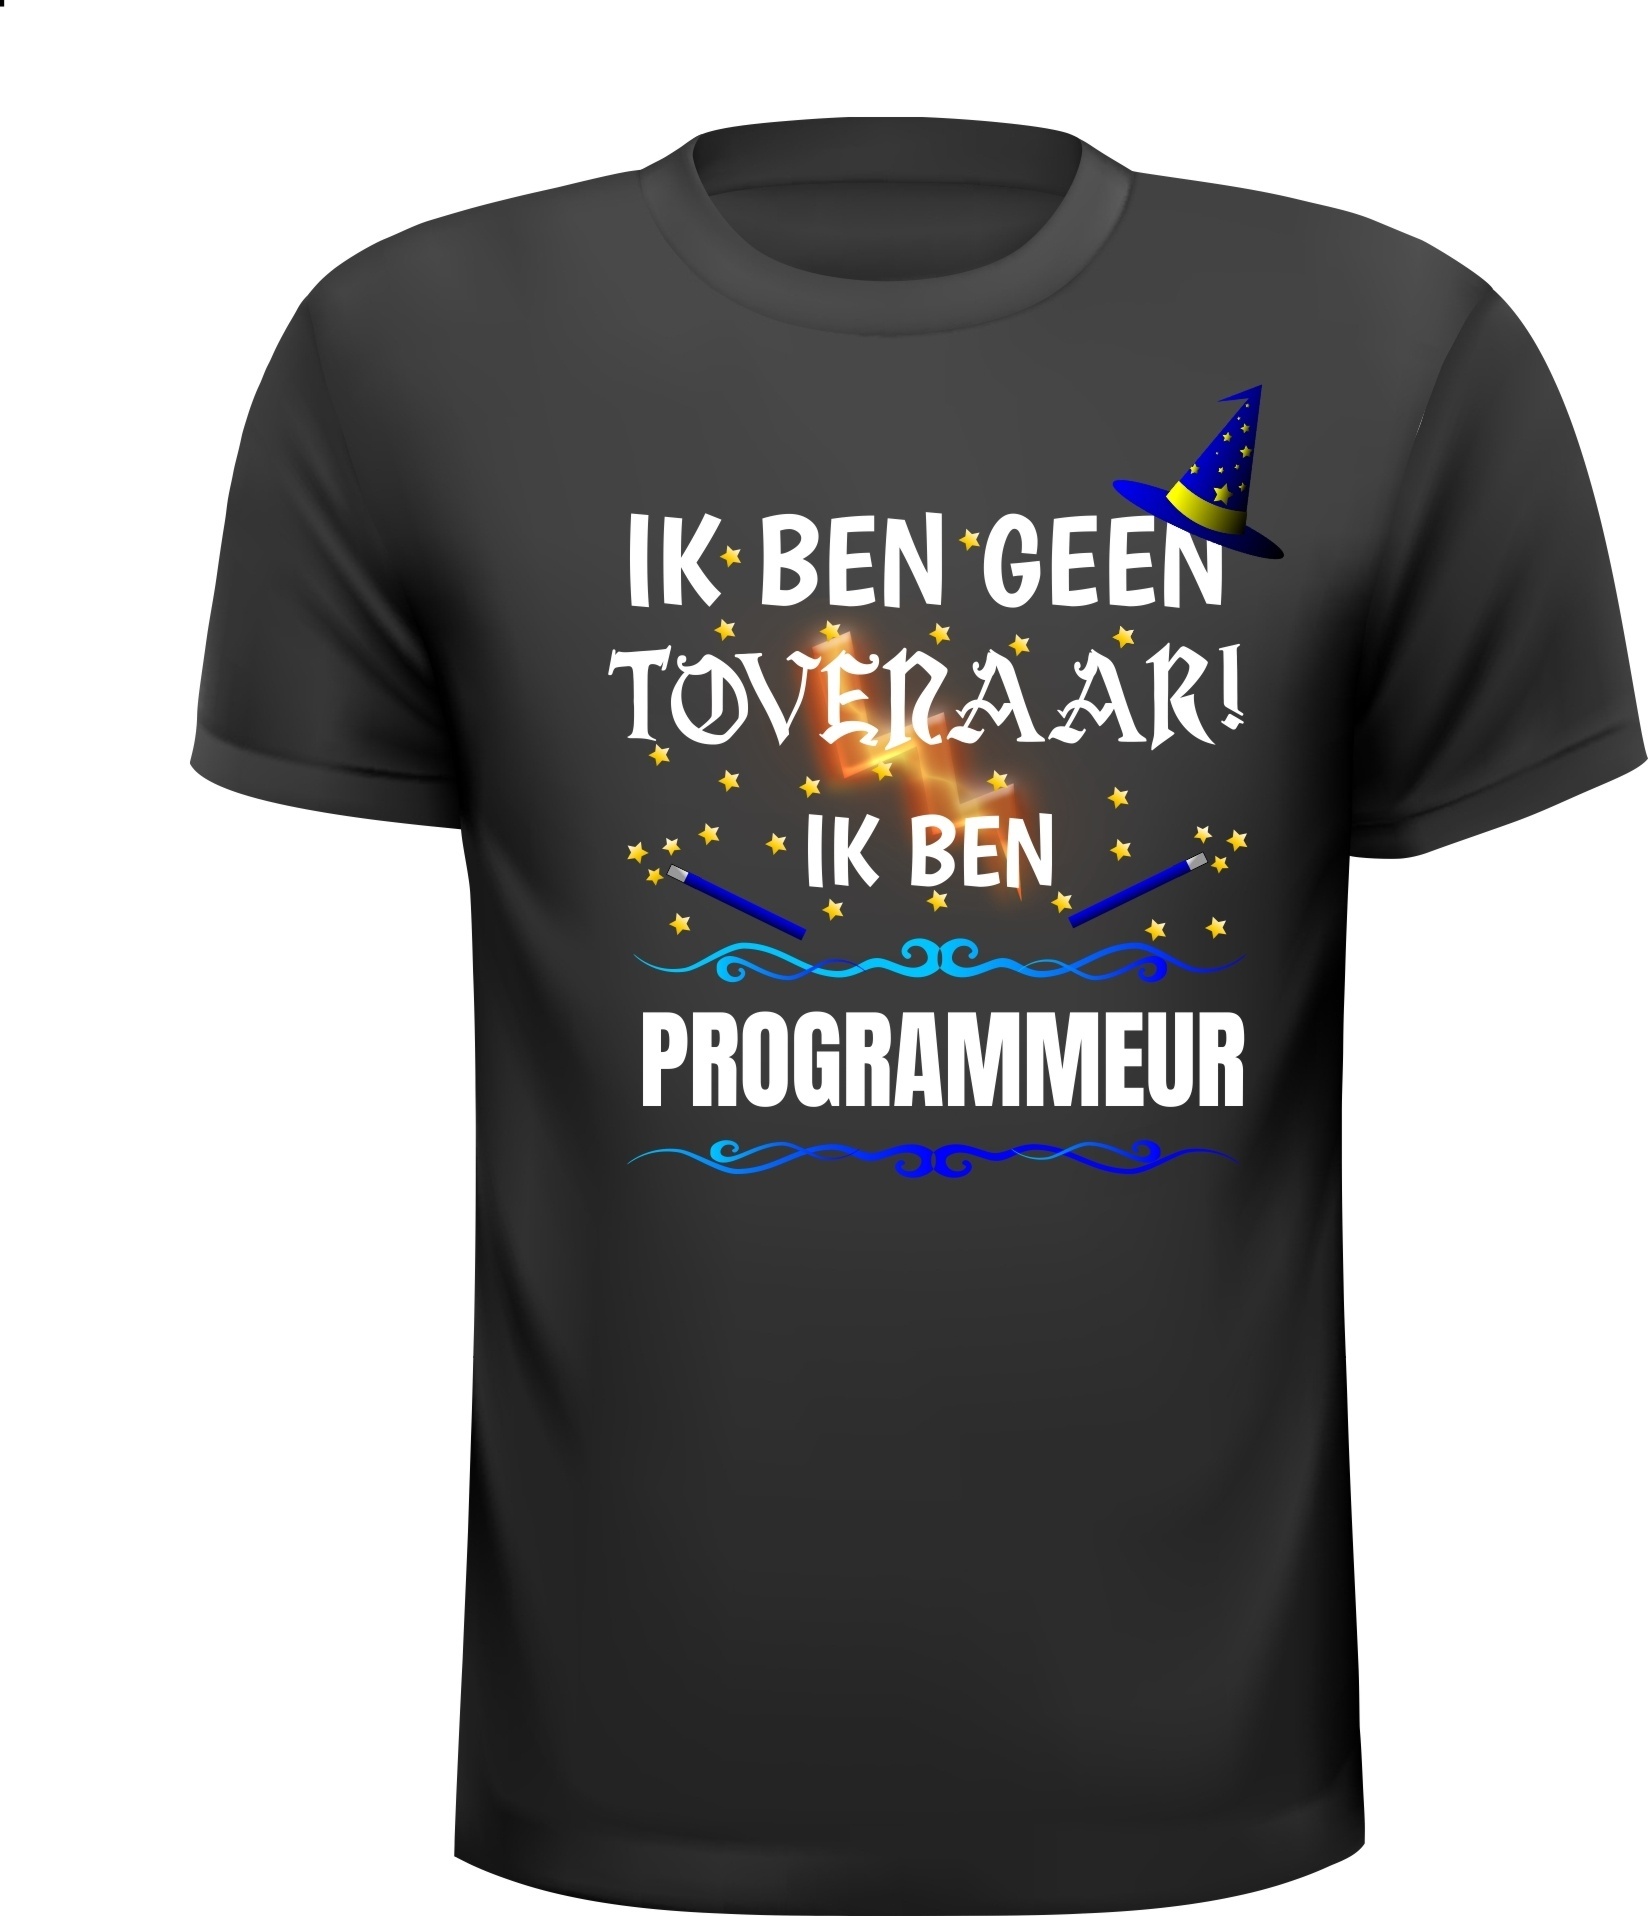 Ik ben geen tovenaar ik ben programmeur grappig humor t-shirt kado